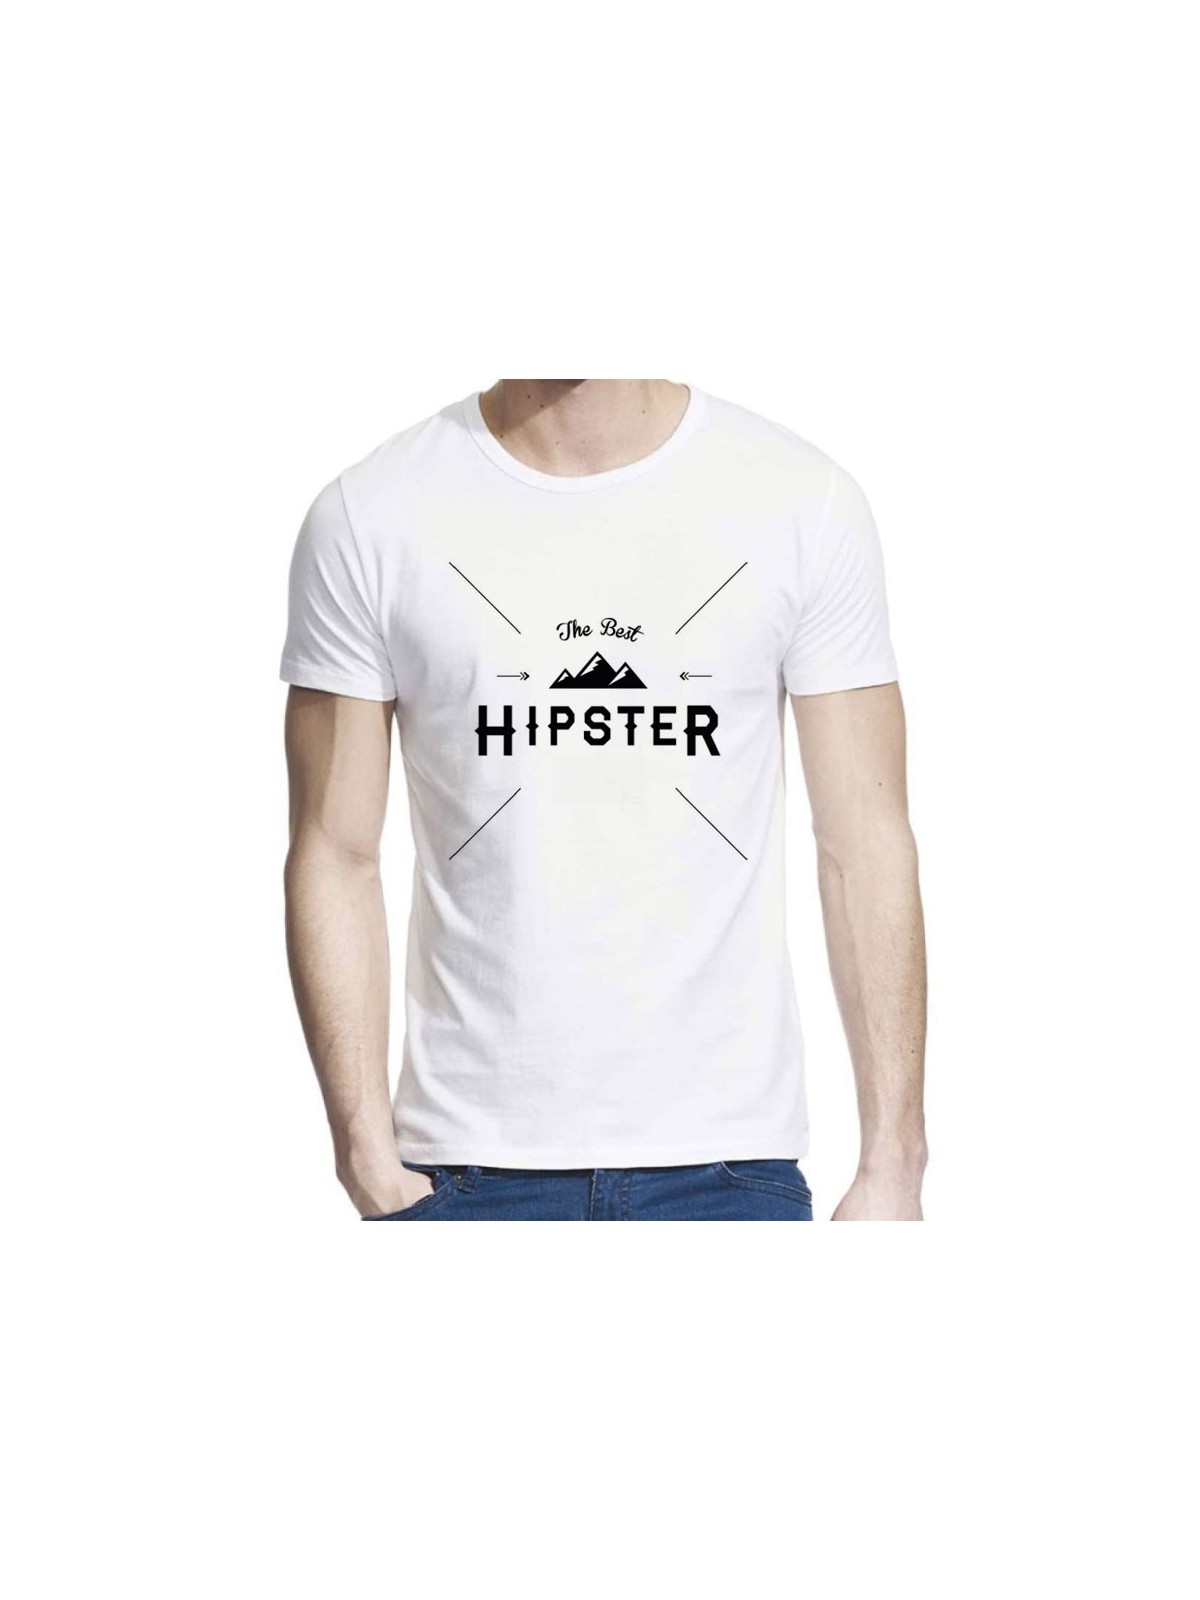 T-Shirt hipster ref 801